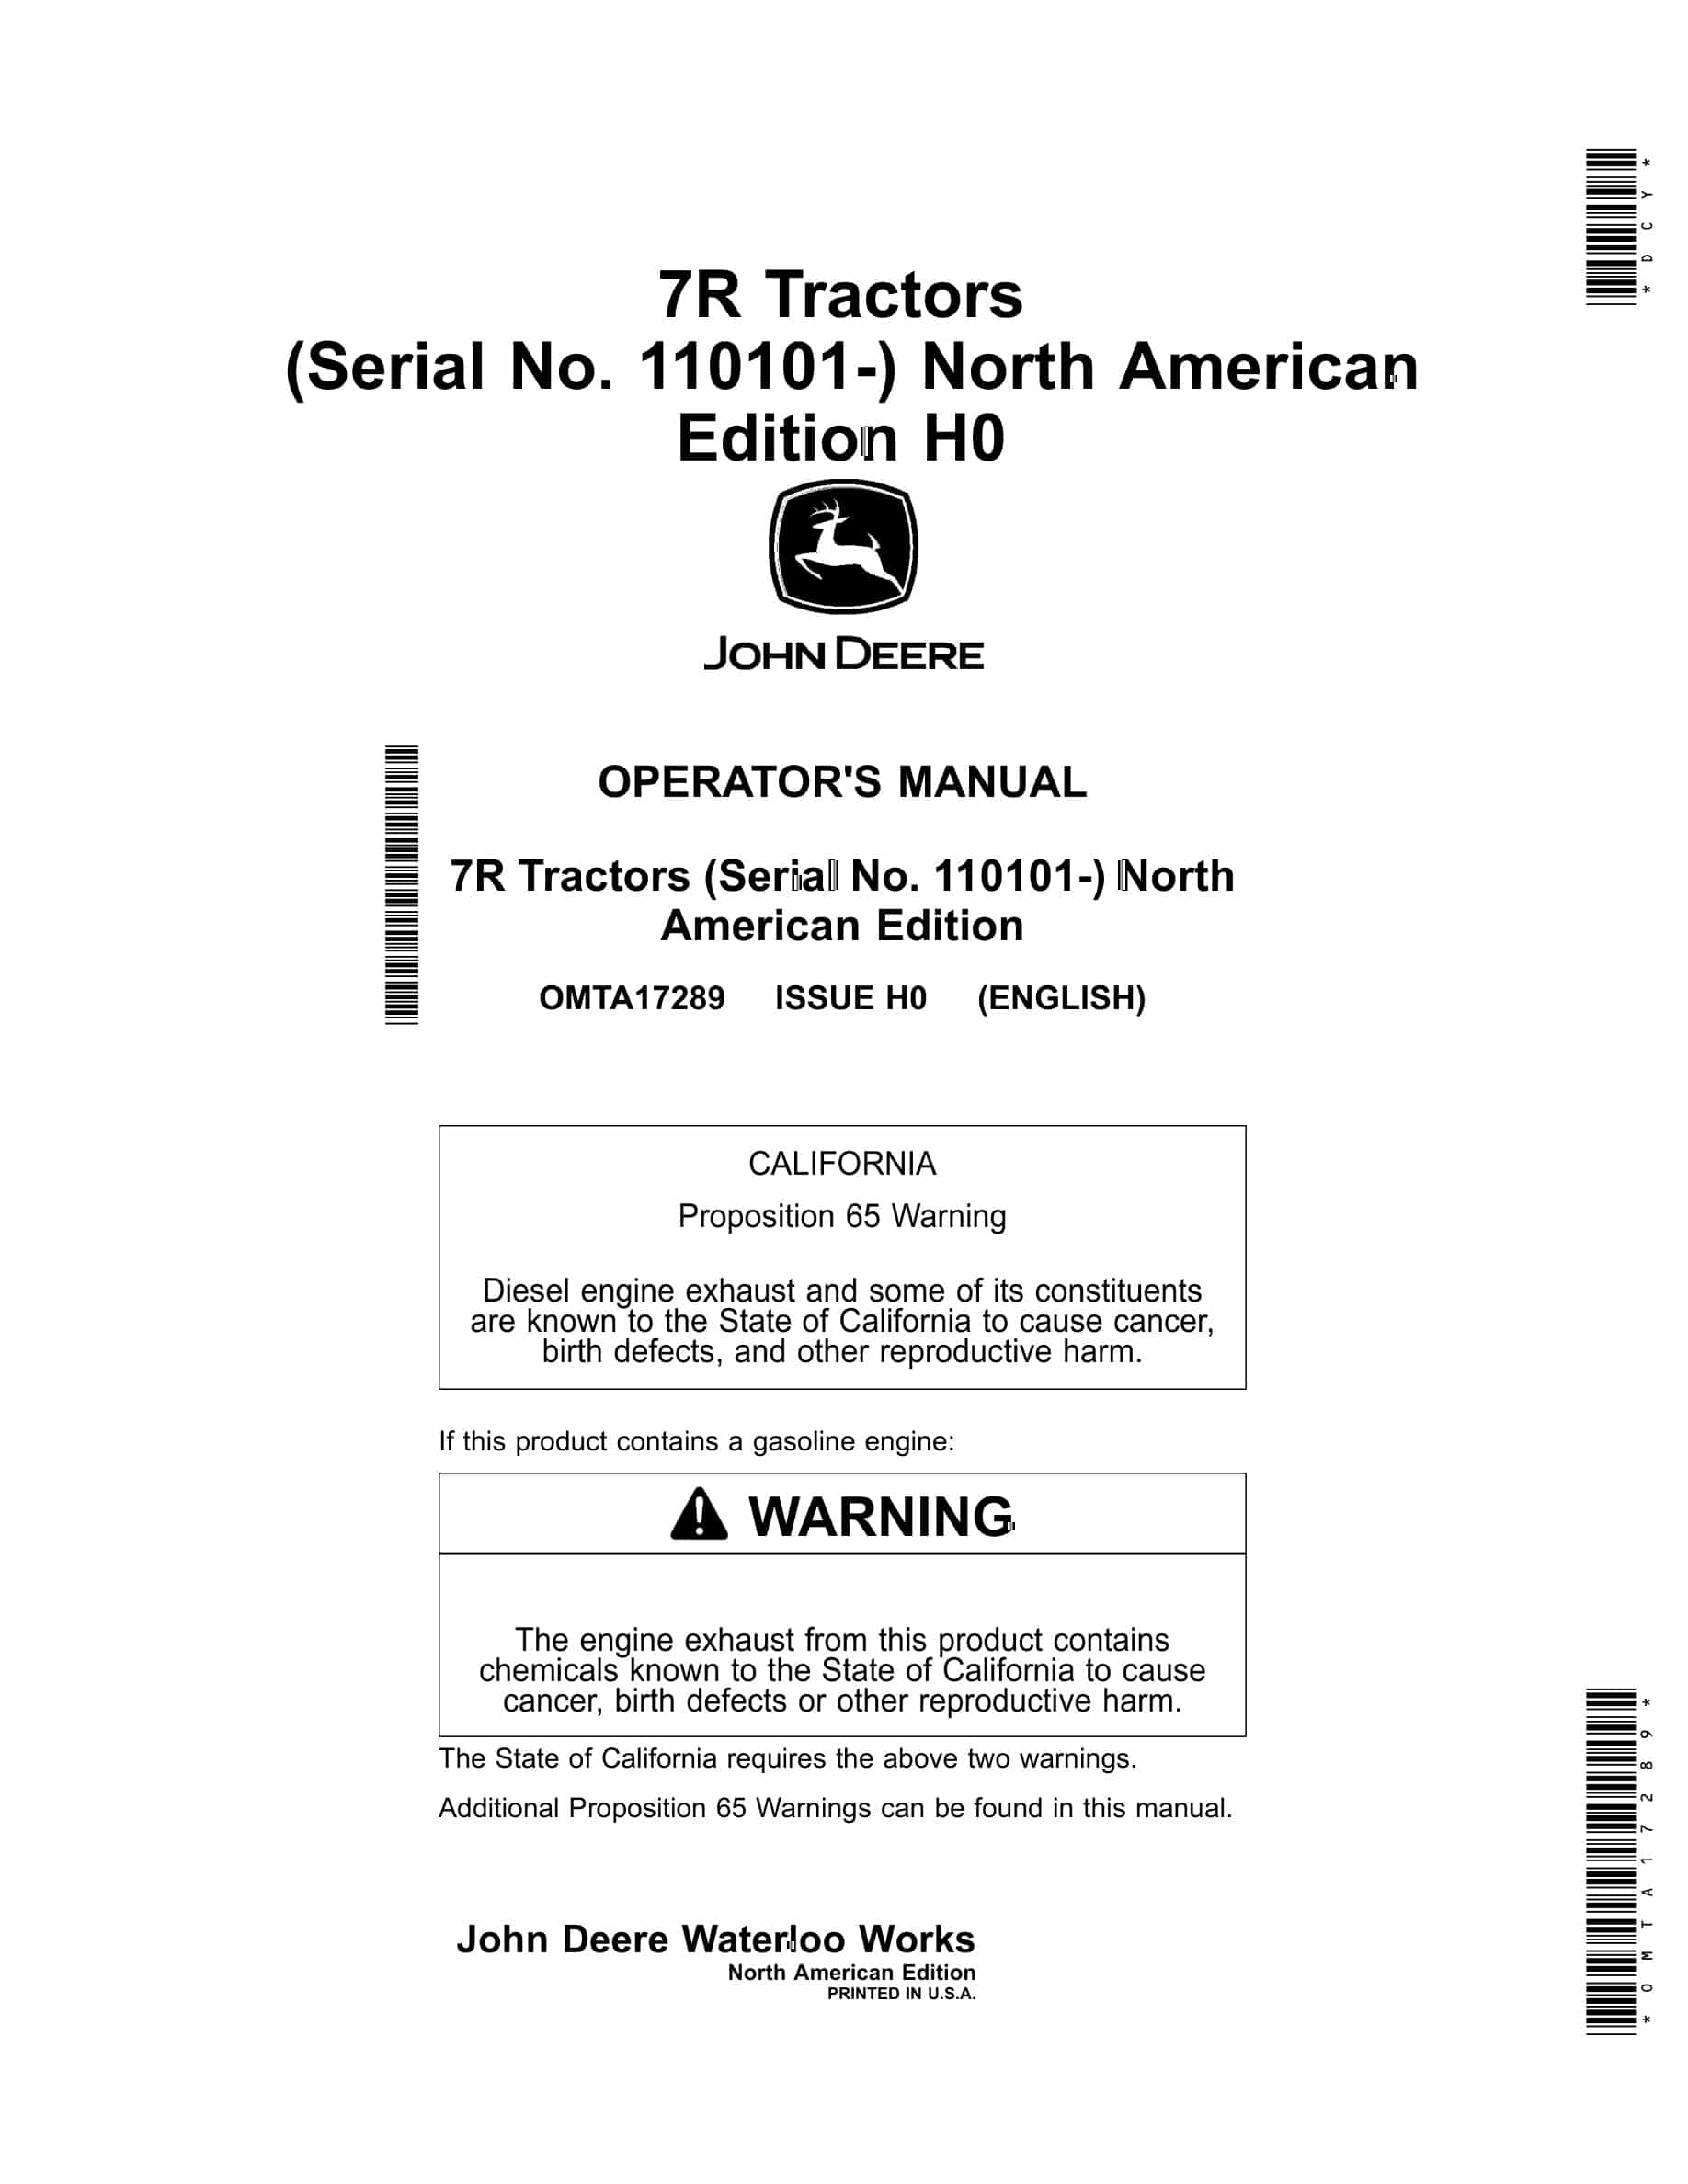 John Deere 7R Tractor Operator Manual OMTA17289-1